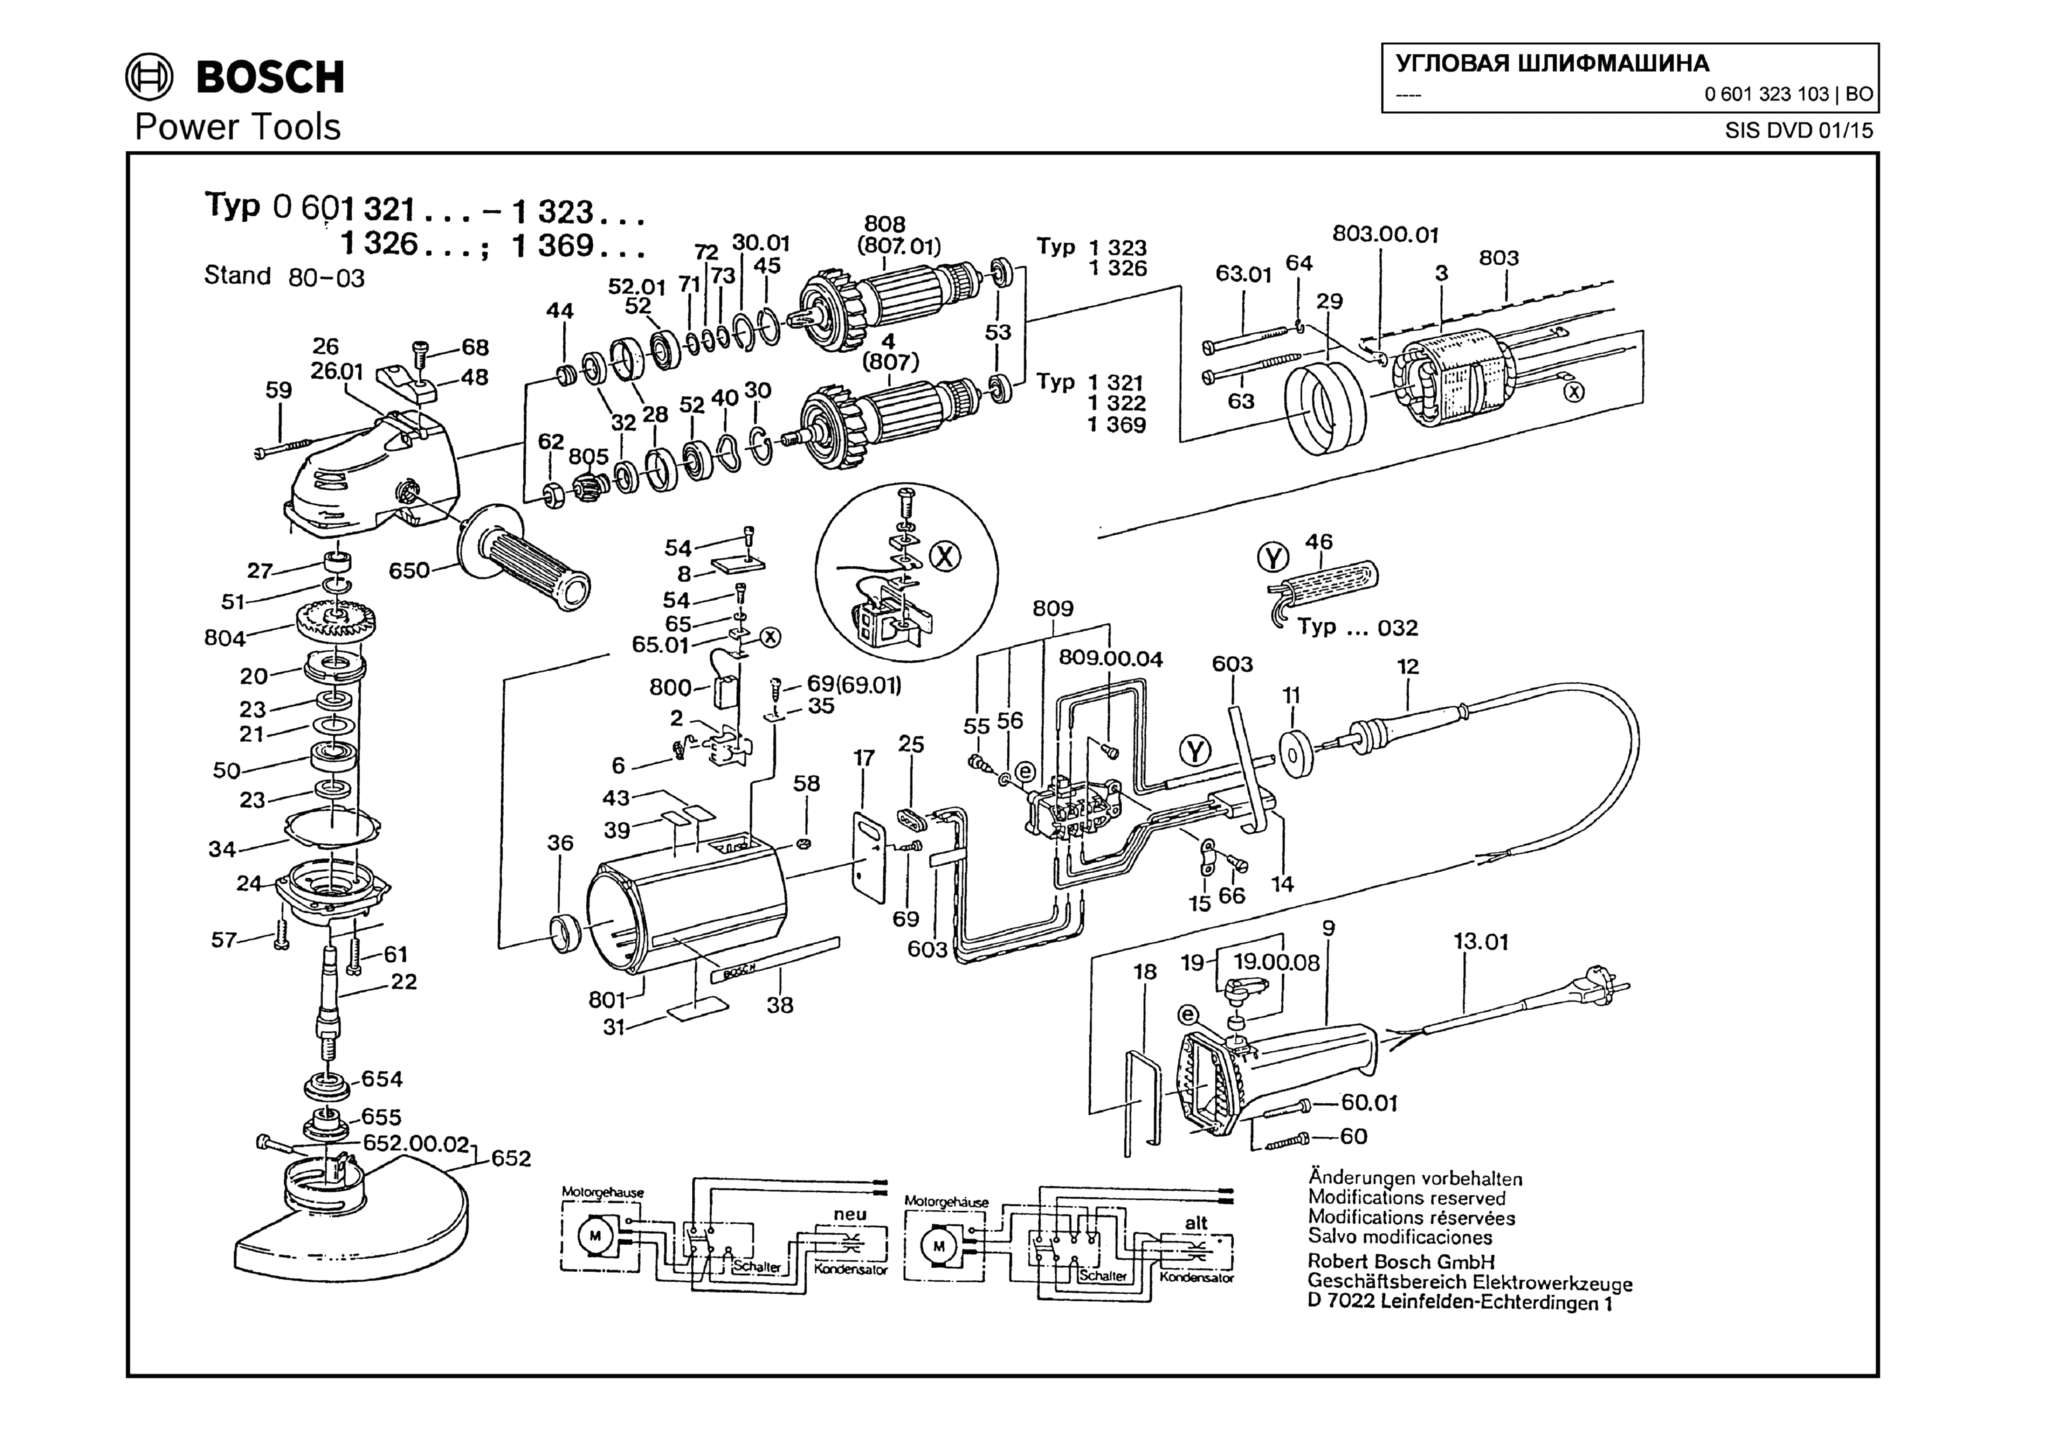 Запчасти, схема и деталировка Bosch (ТИП 0601323103)